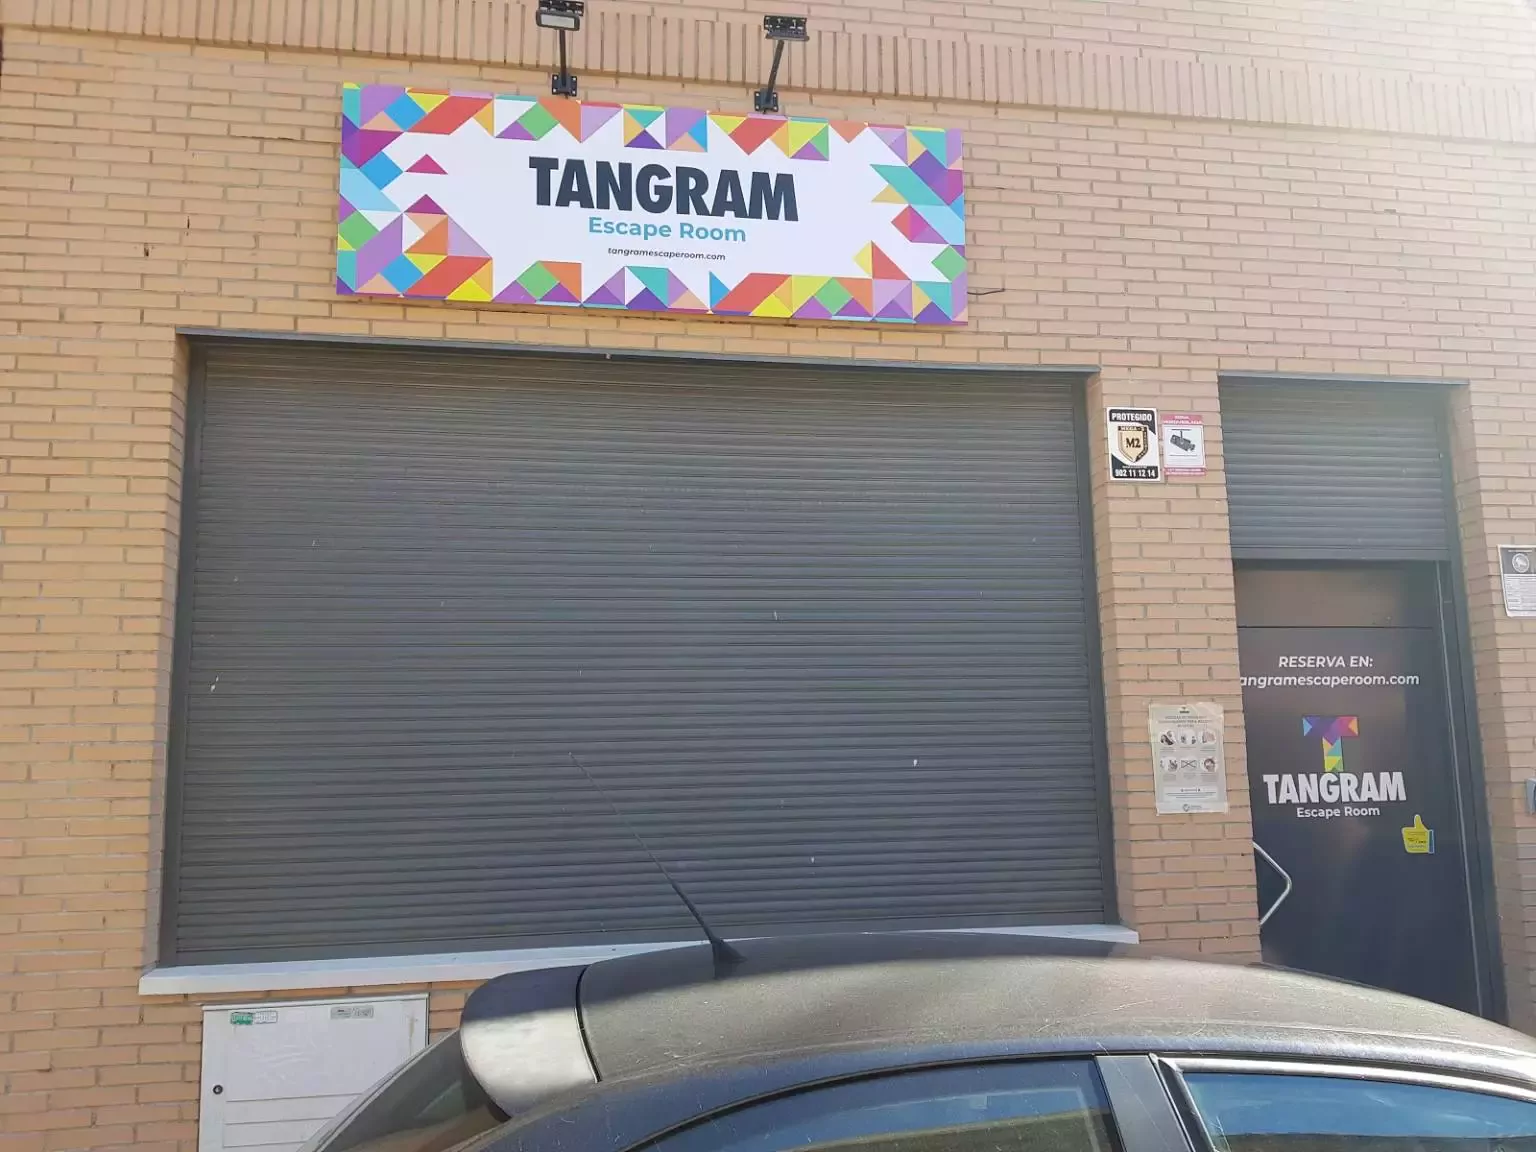 1. Tangram Escape Room